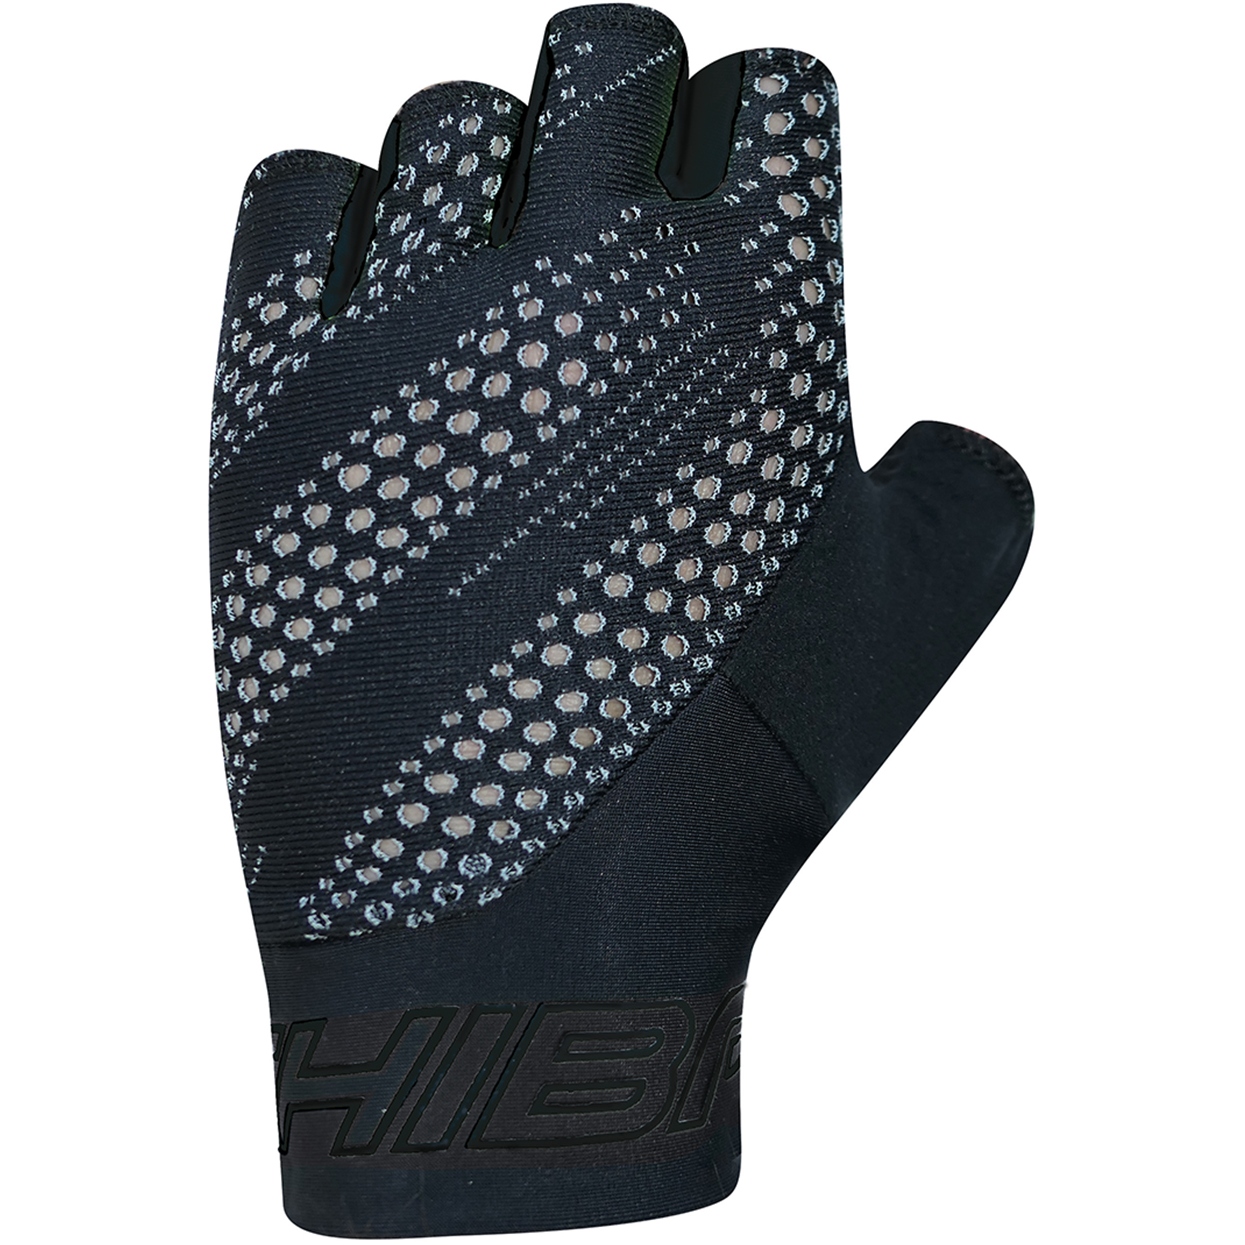 Productfoto van Chiba Ergo Handschoenen met Korte Vingers - zwart/zwart